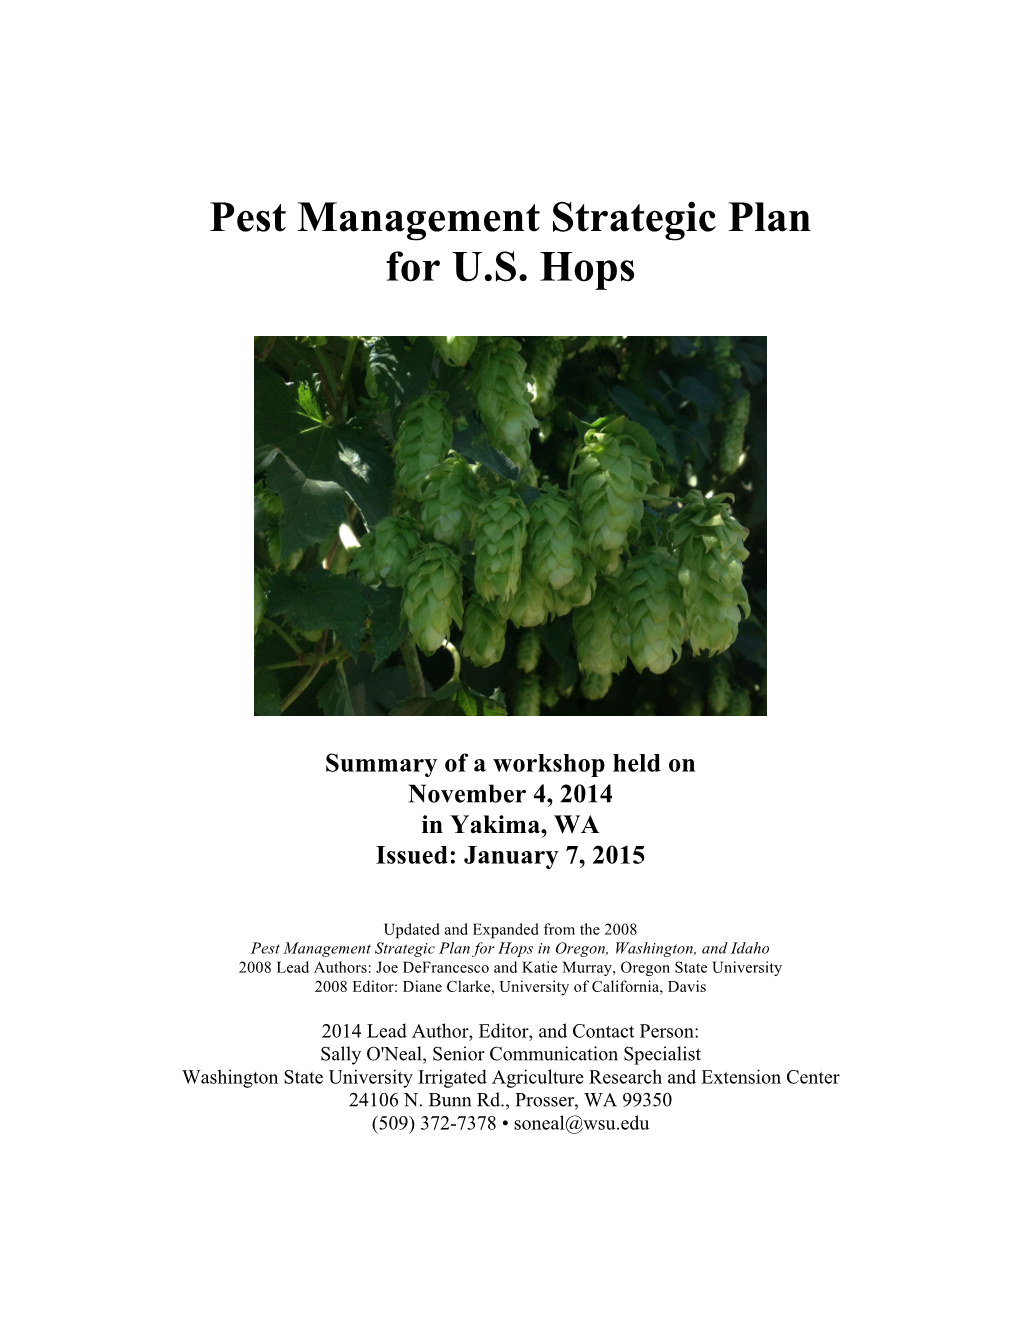 Pest Management Strategic Plan for U.S. Hops